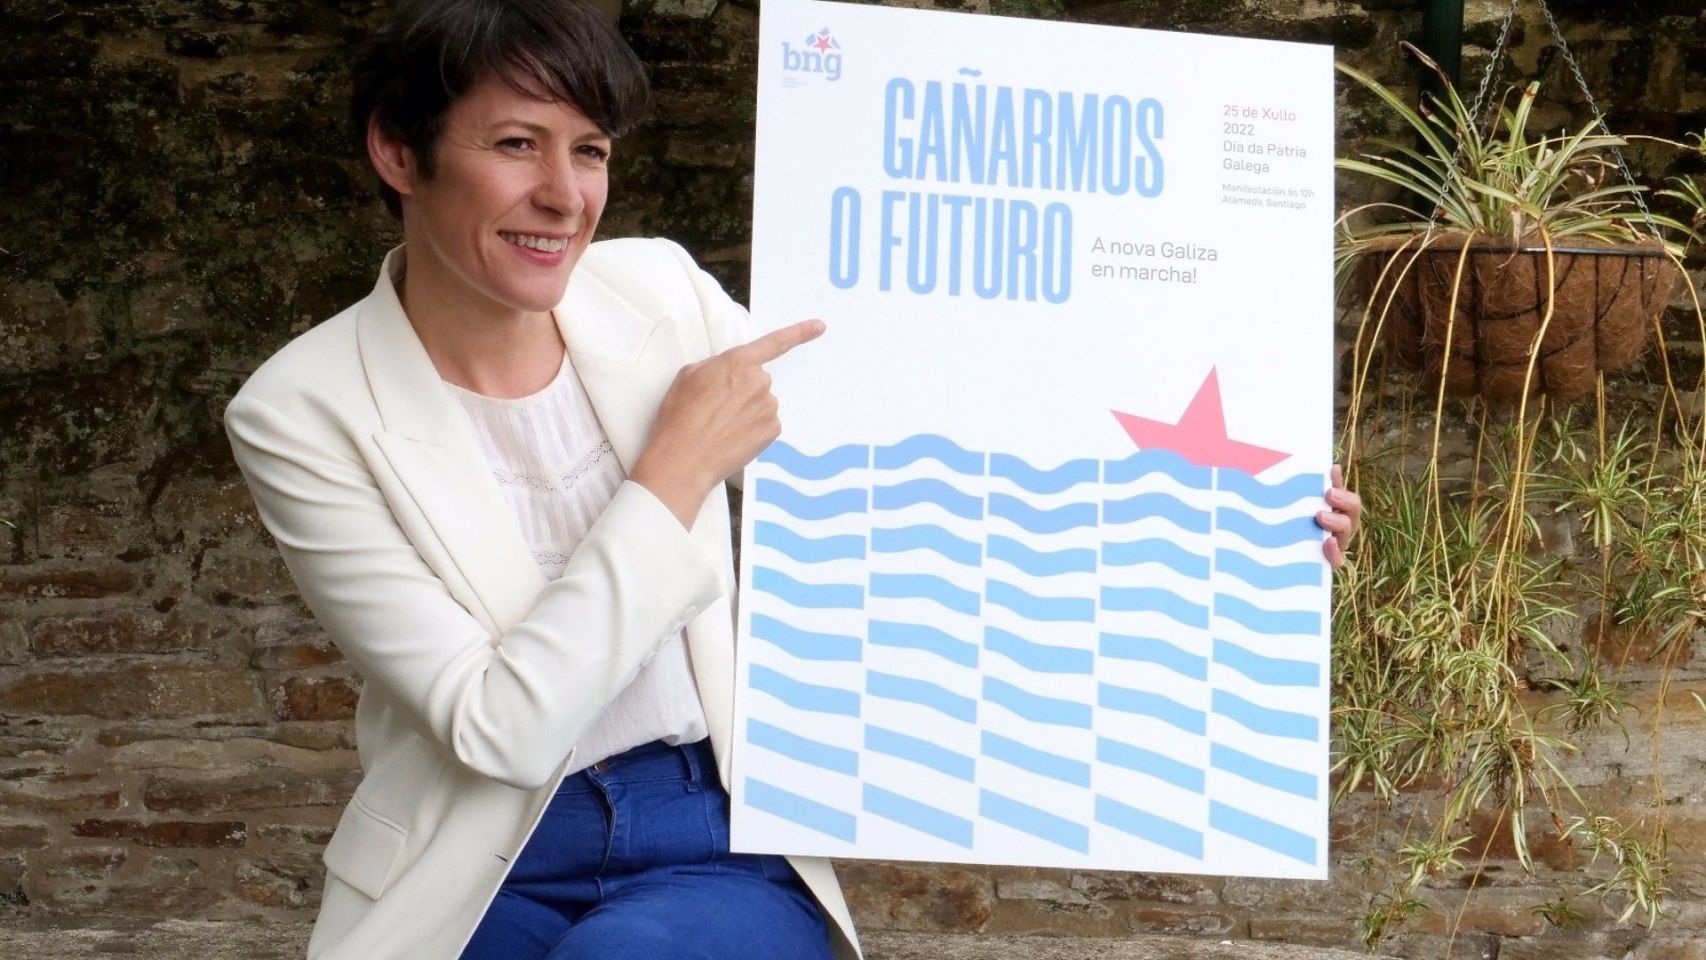 La portavoz nacional del BNG, Ana Pontón, con el cartel de la campaña de los nacionalistas para celebrar el 25 de julio.